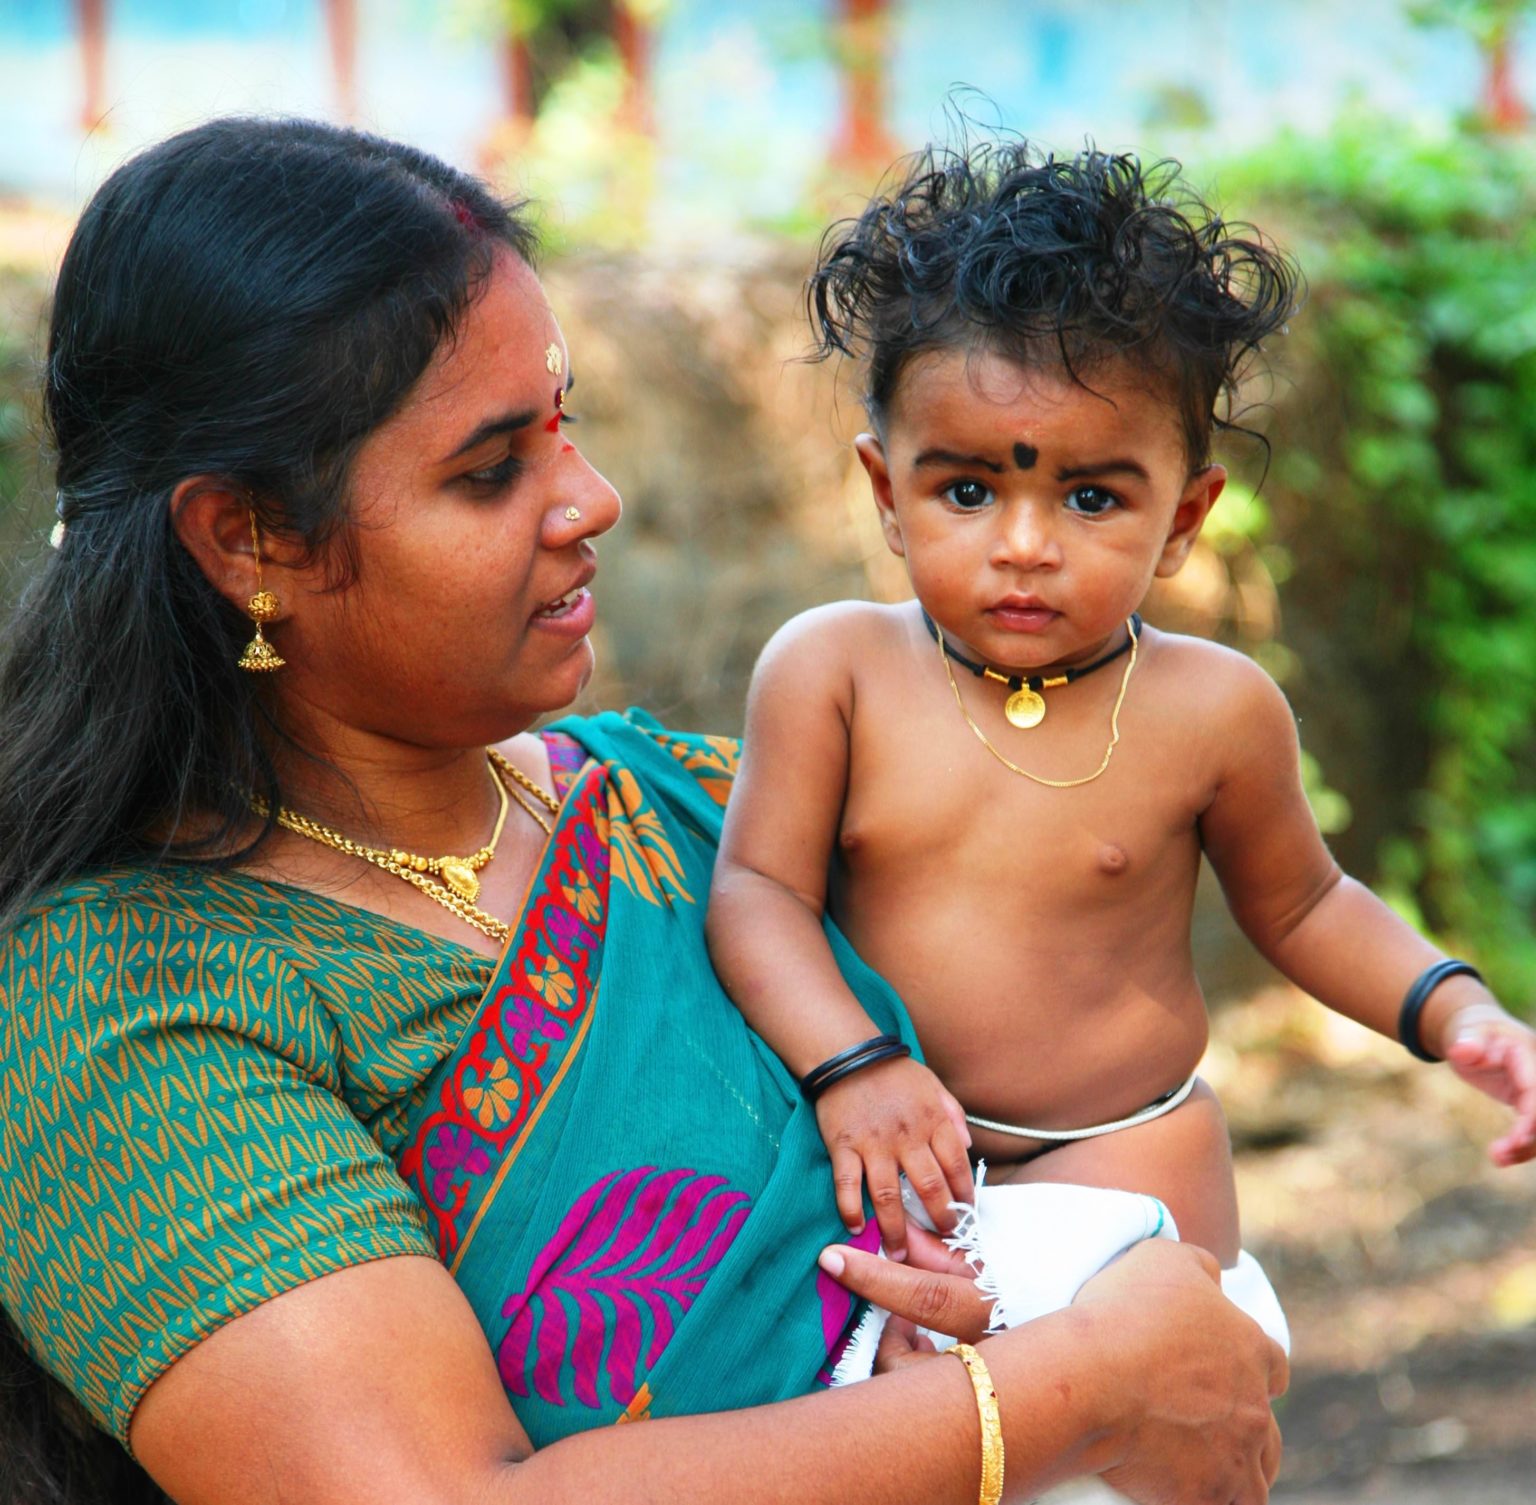 femme indienne avec bébé